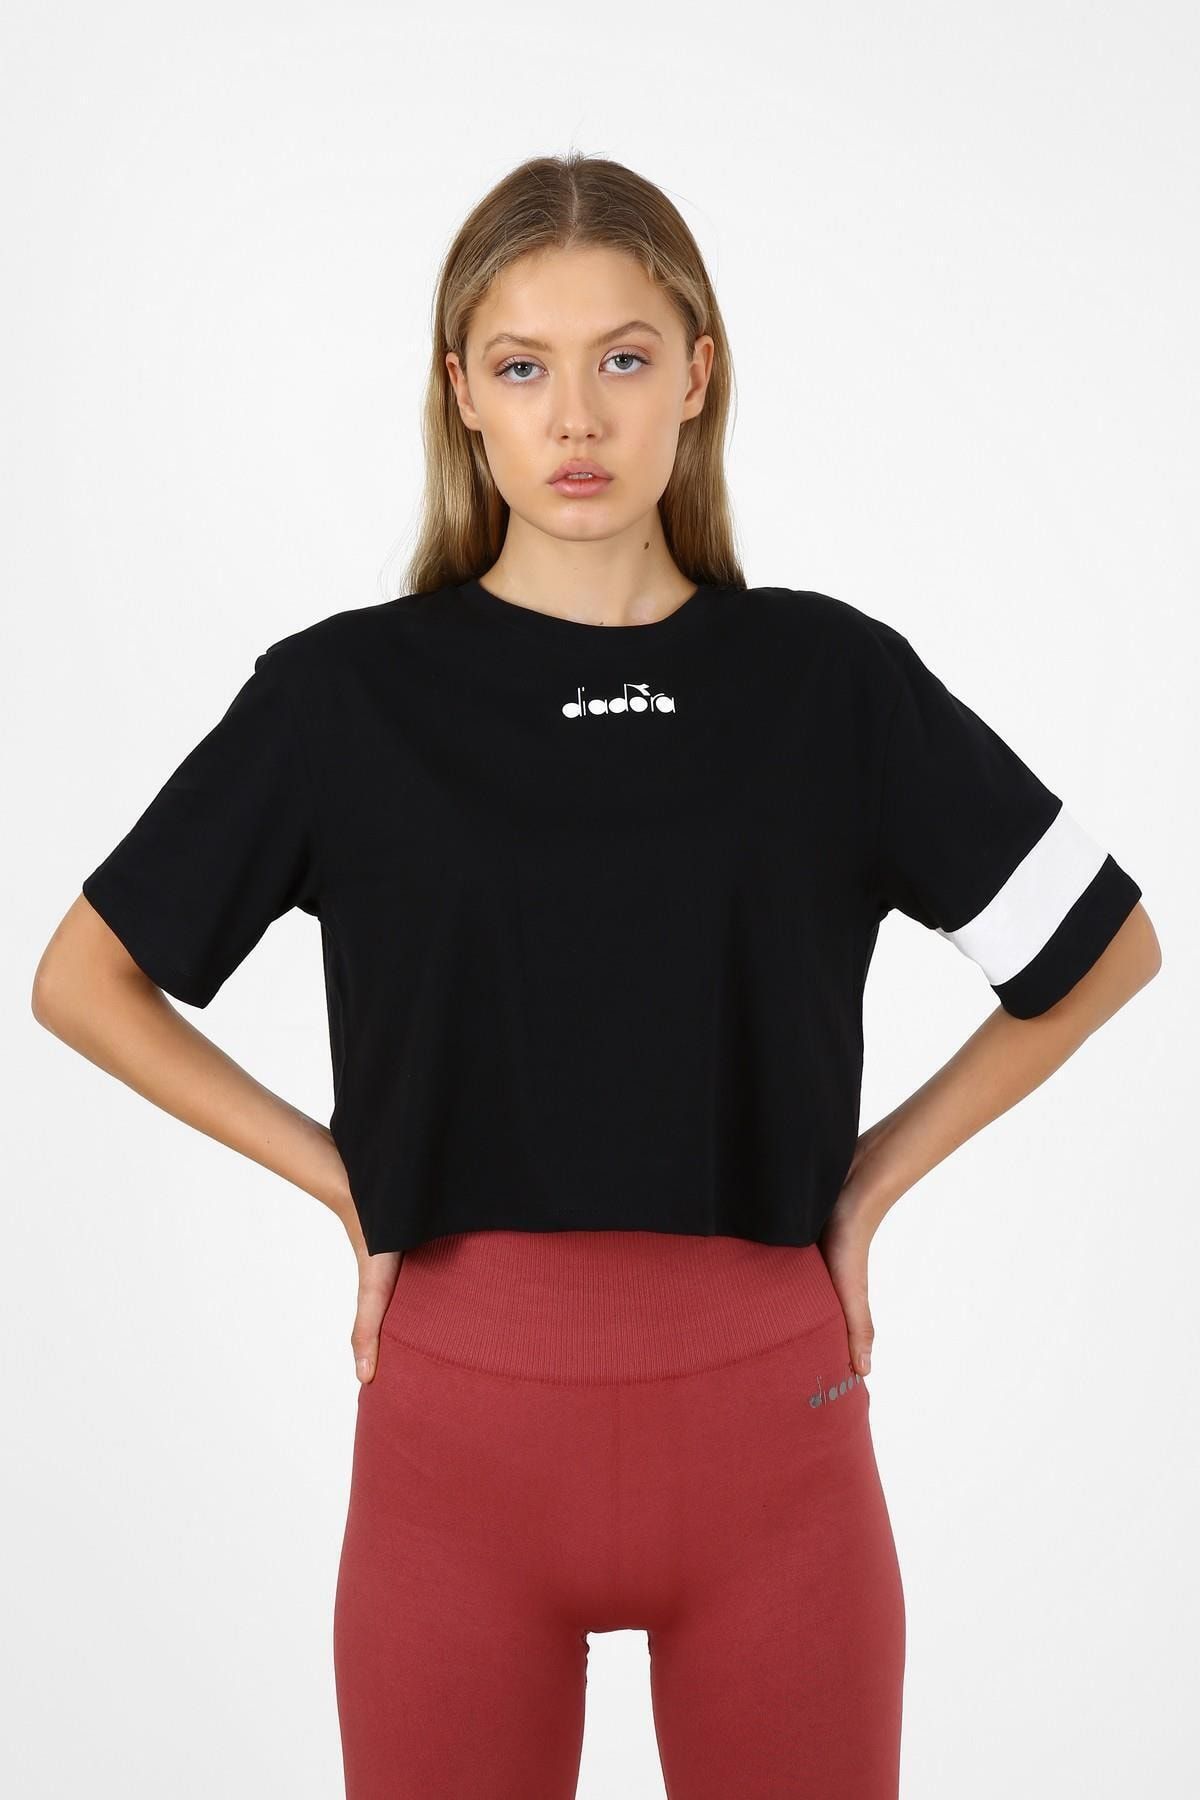 Diadora W Crop - Kadın Pamuklu Siyah Crop T-shirt - 175694-80013